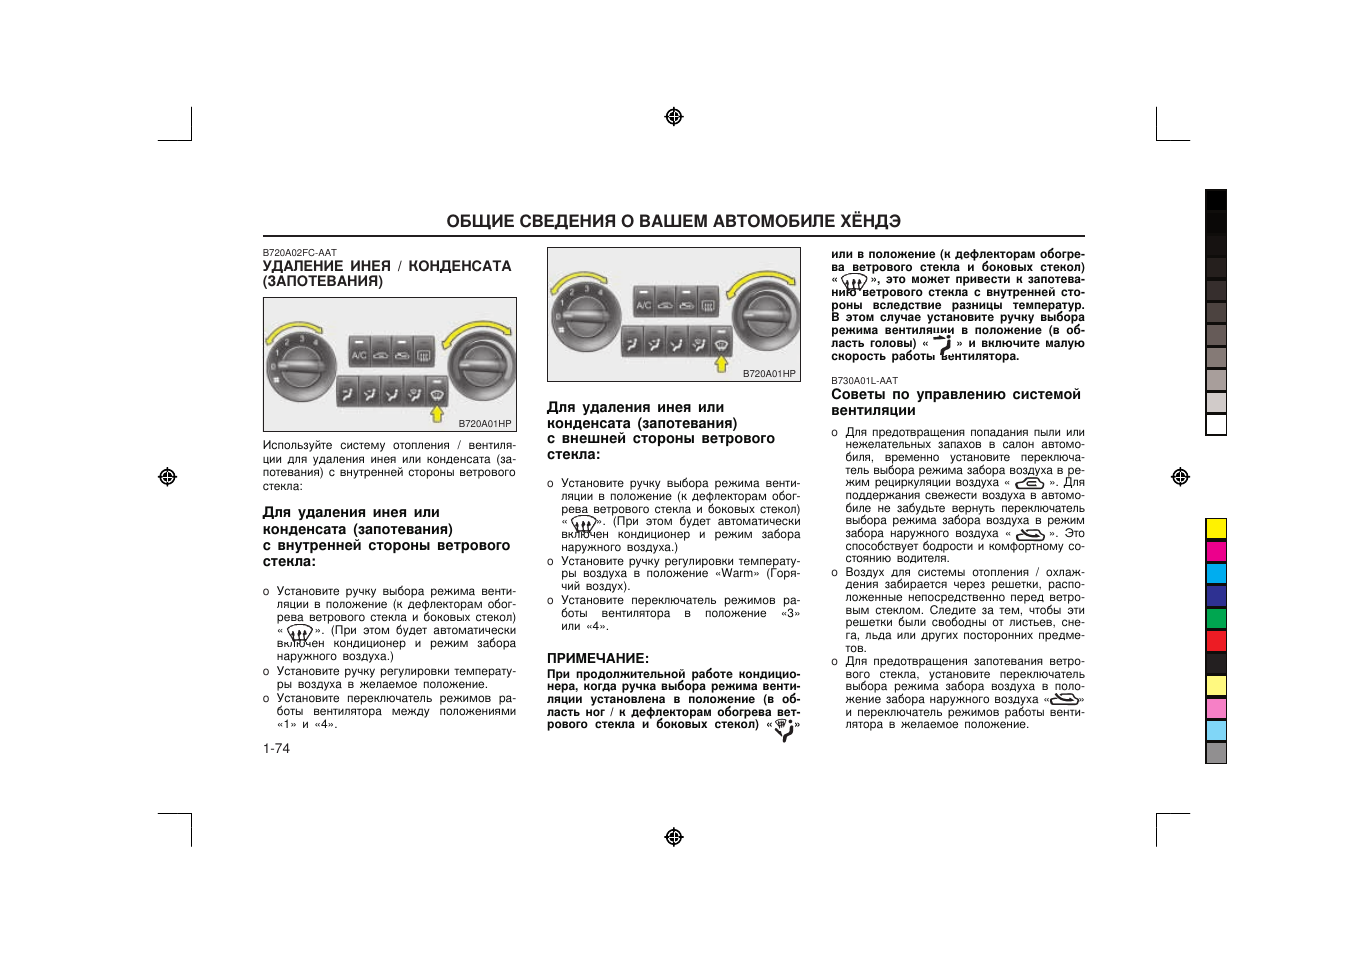 Общие сведения о вашем автомобиле хендэ | Инструкция по эксплуатации Hyundai Terracan | Страница 87 / 195